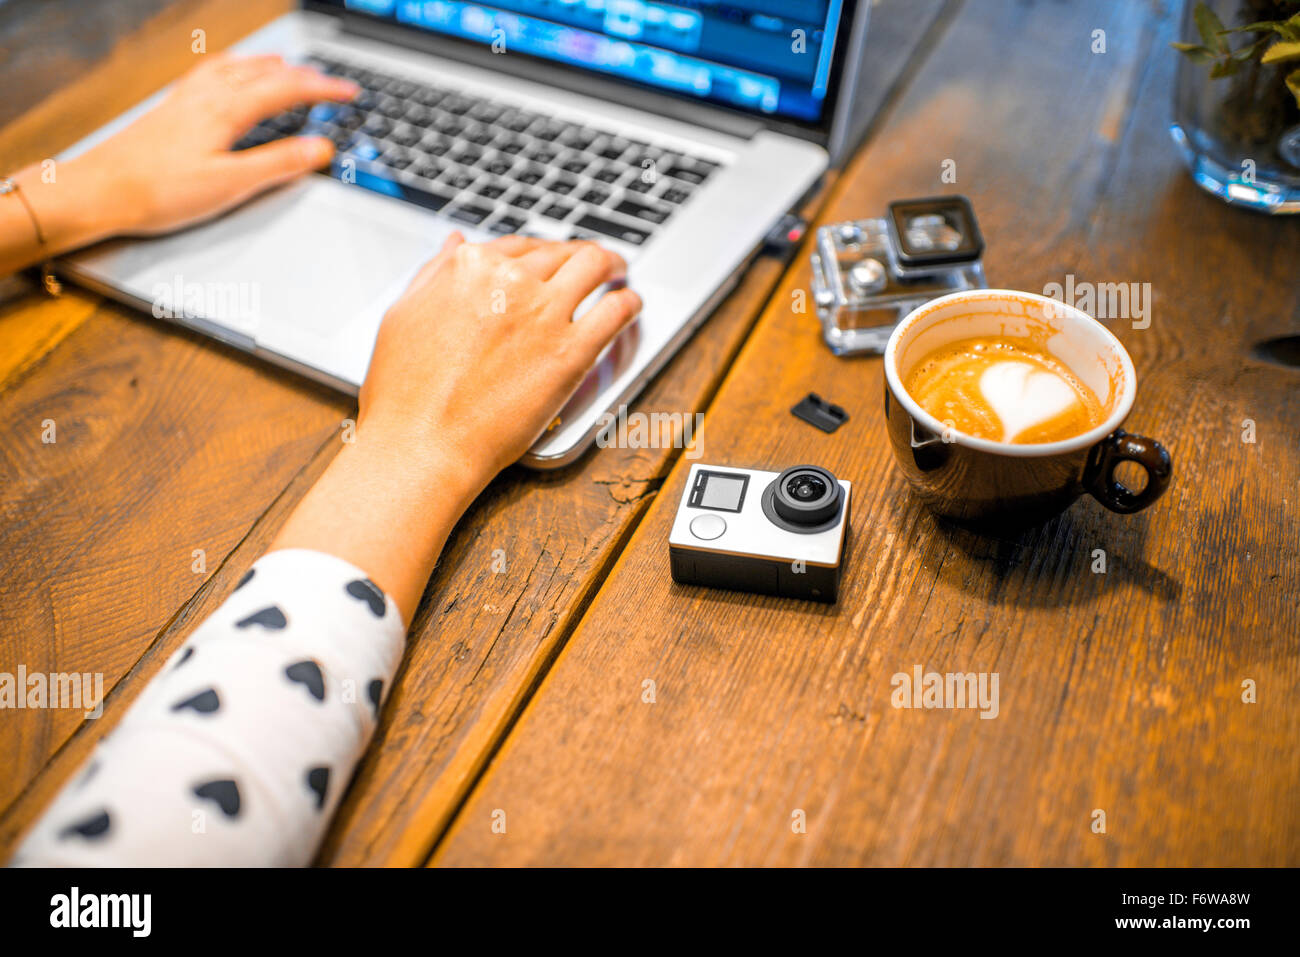 Petite action caméra vidéo avec coffe cup et ordinateur portable sur la table en bois Banque D'Images